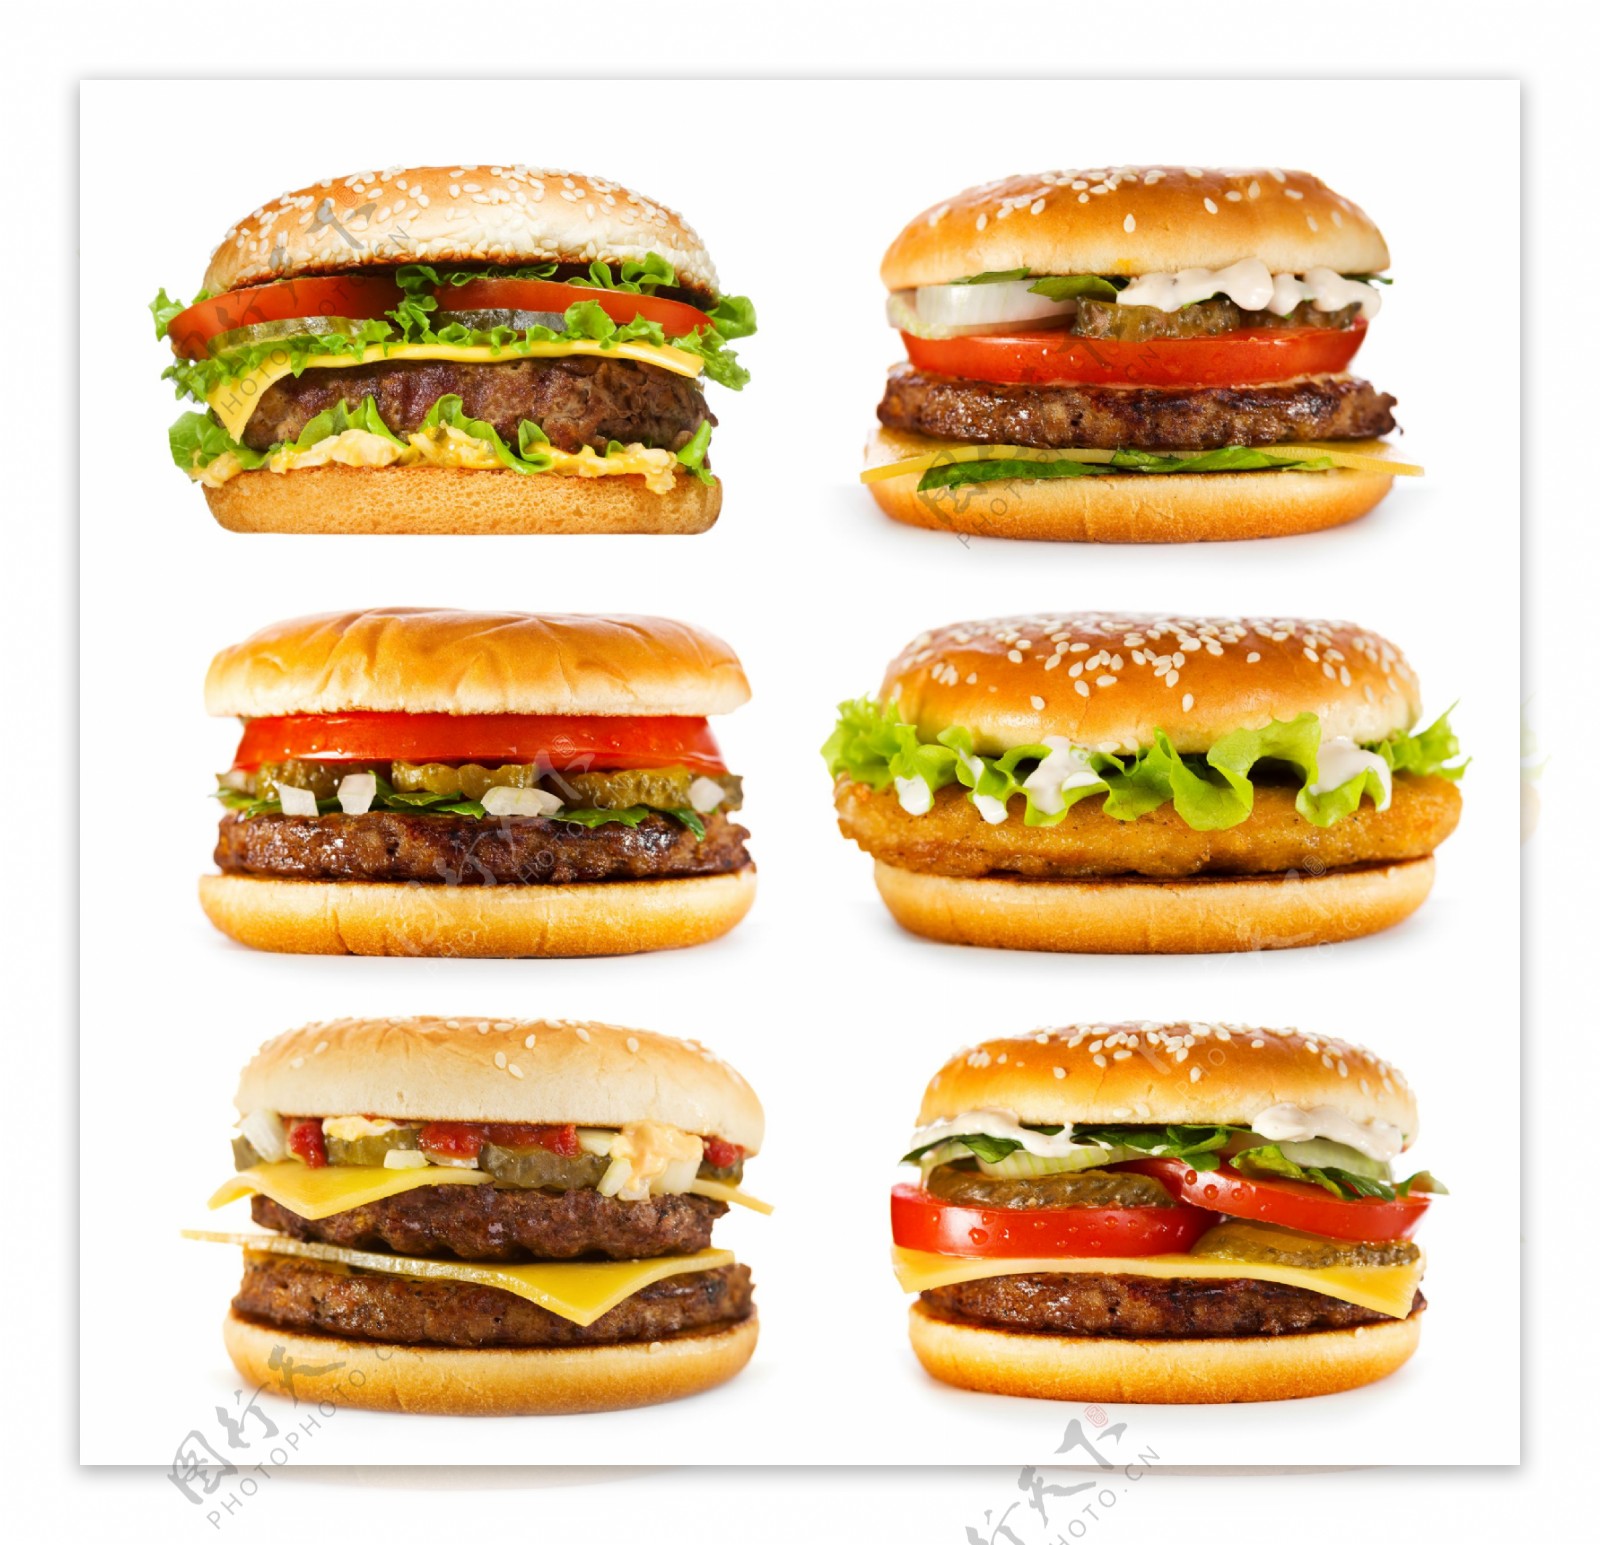 六种口味的汉堡图片